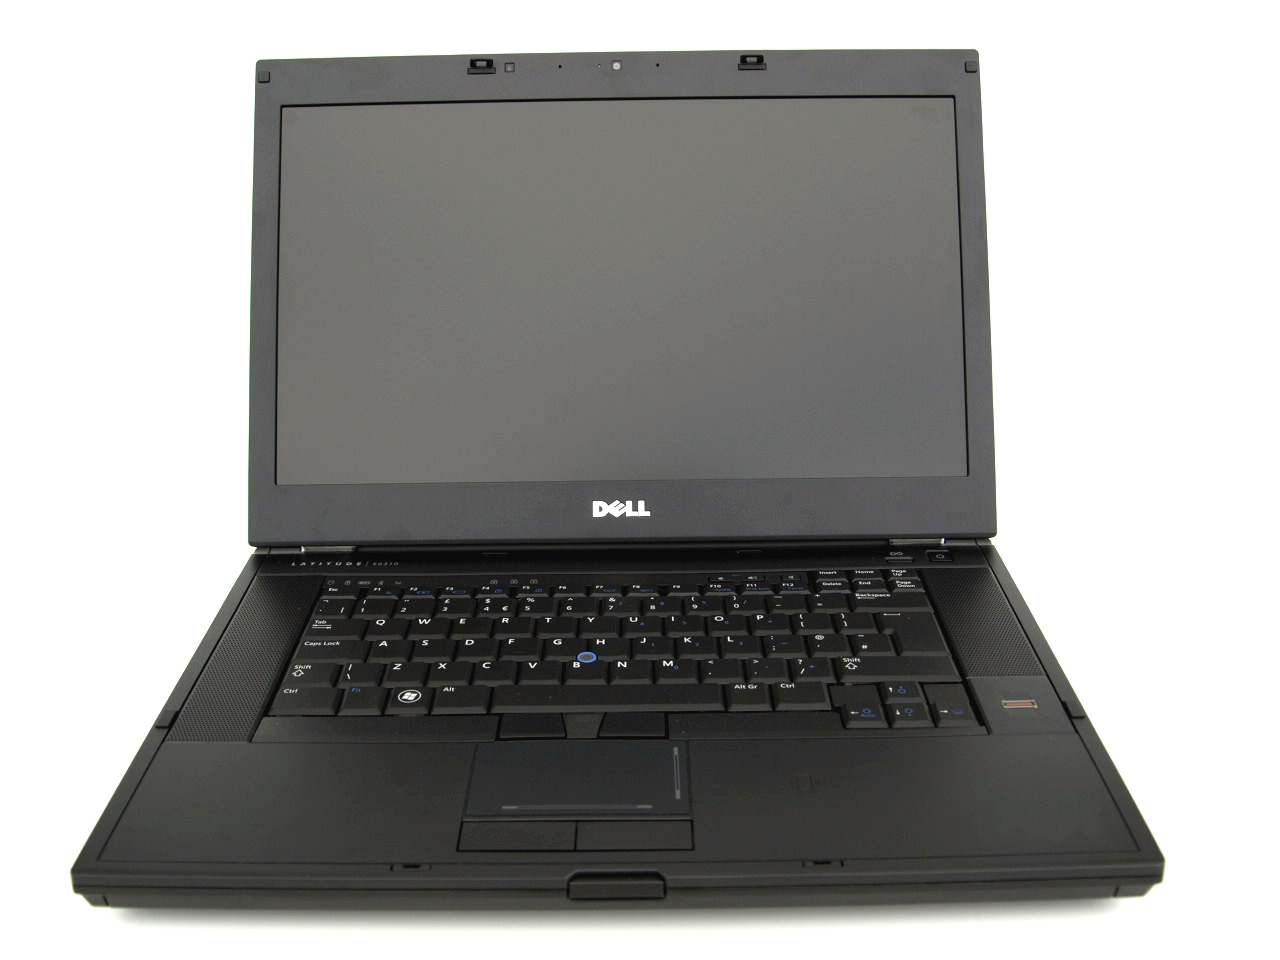 Laptop DELL Latitude E6510, Intel Core i7-640M 2.80GHz, 4GB DDR3, 320GB SATA, DVD-RW, Fara Webcam, 15.6 Inch